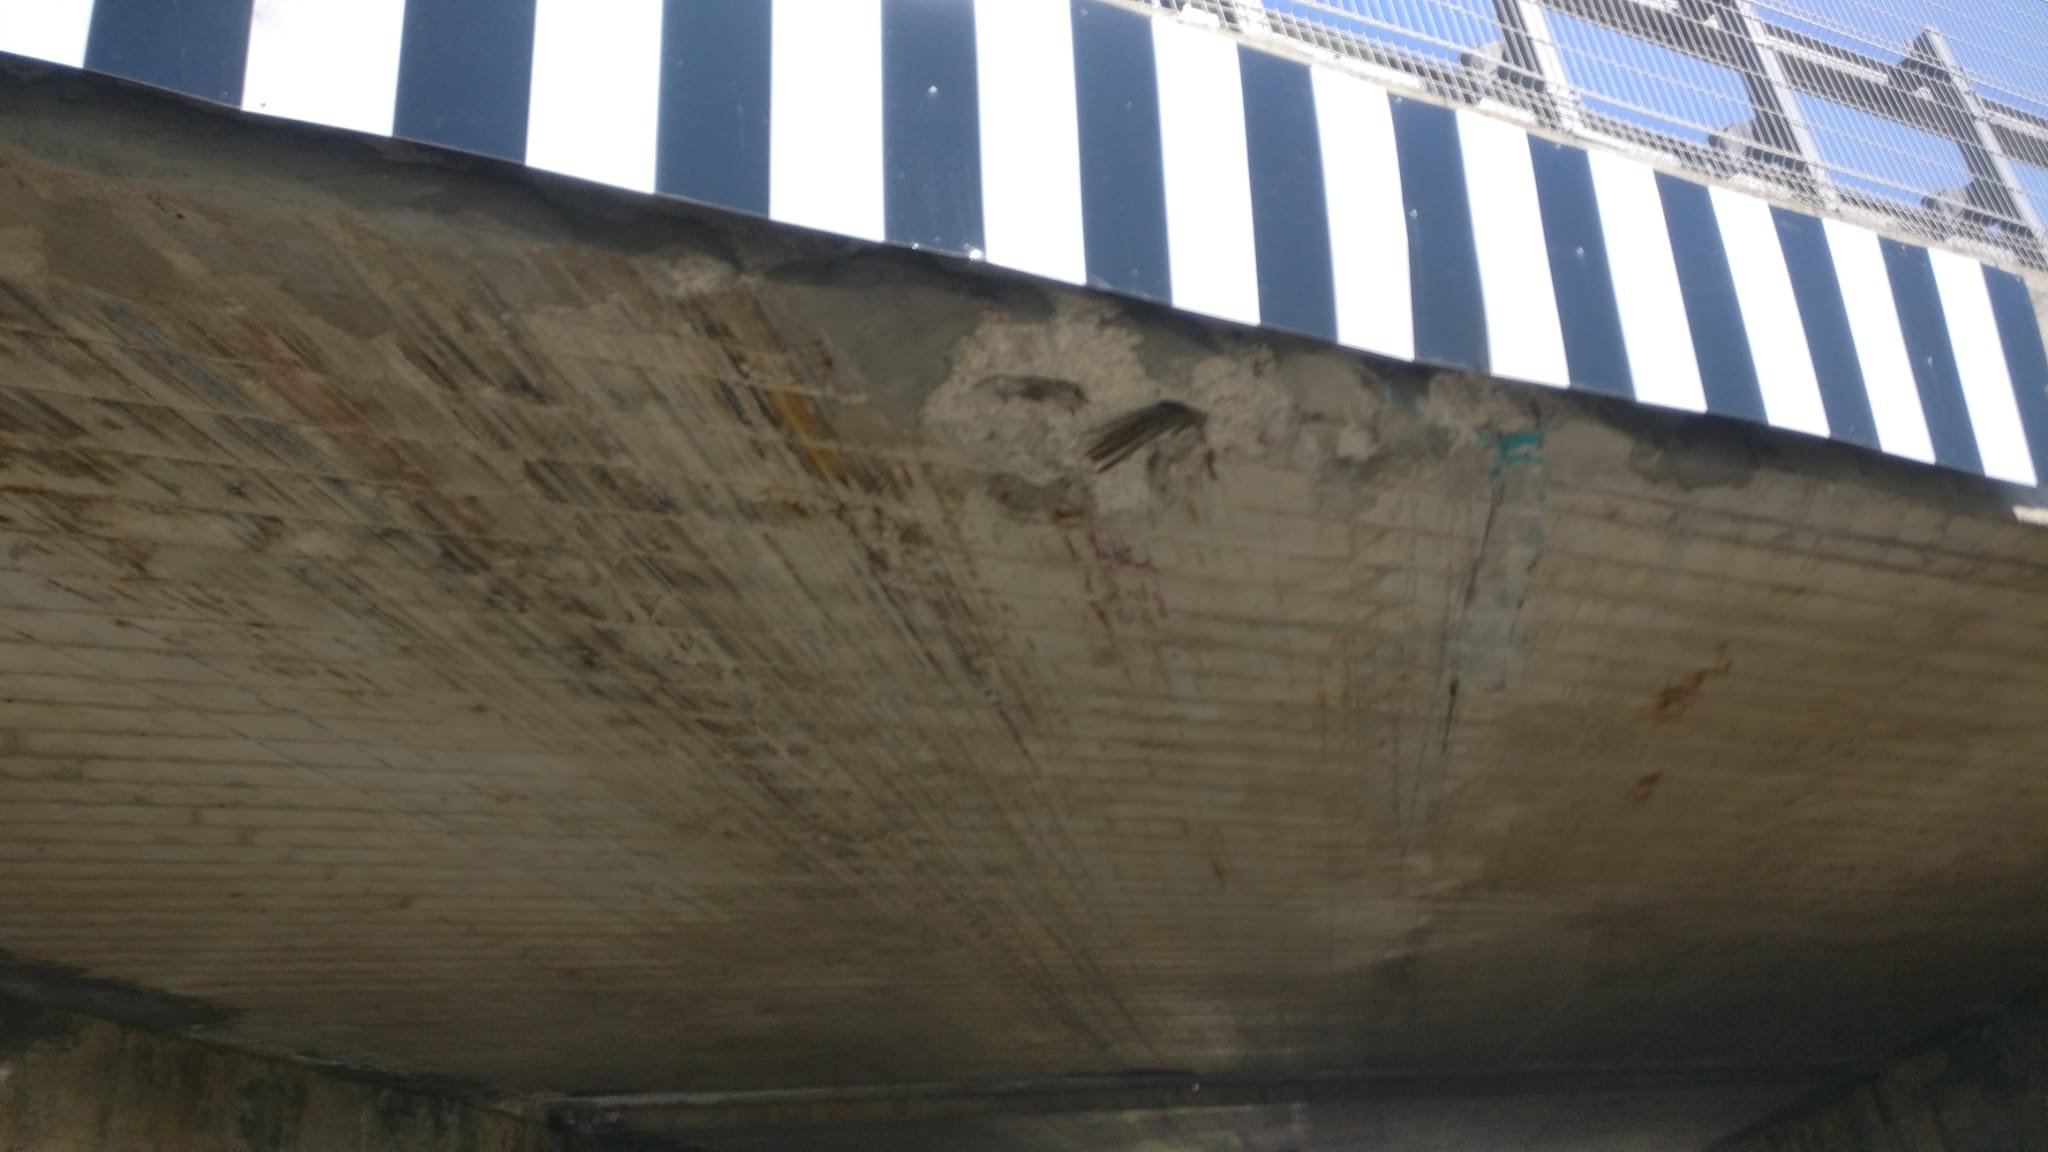 Urtato il ponte dell’autostrada verso Valle S. Bartolomeo: caduti alcuni calcinacci